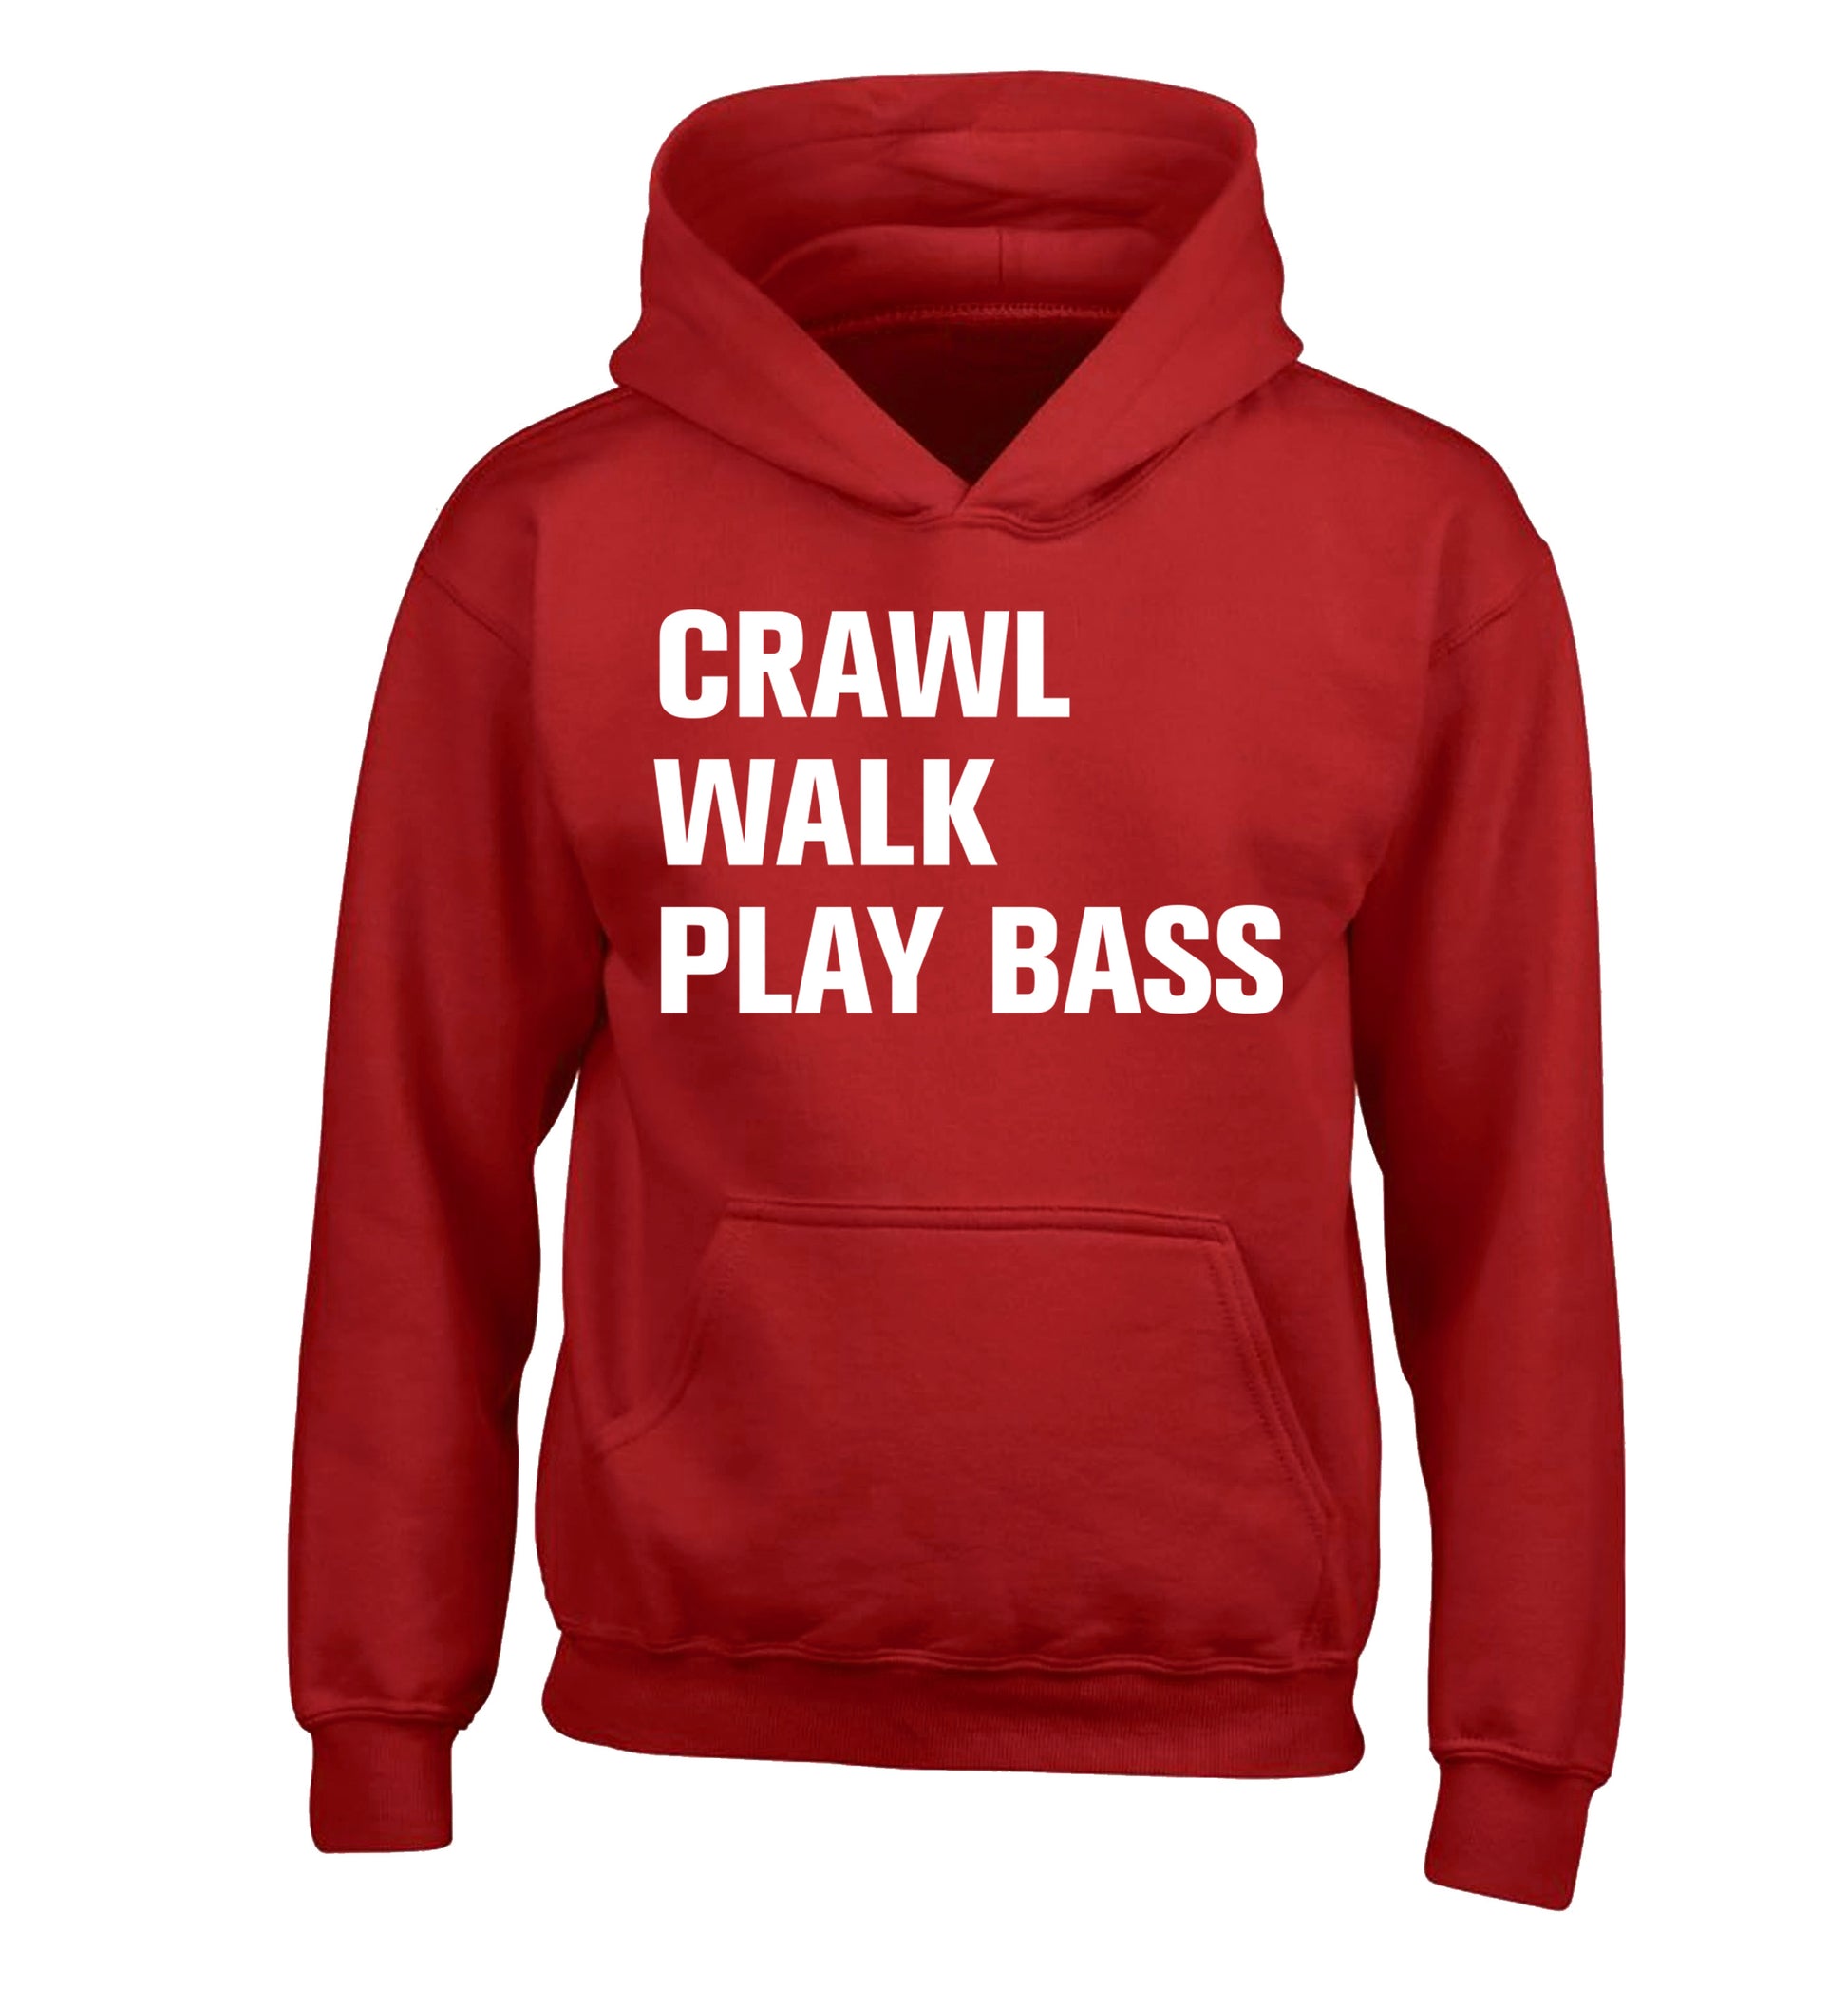 Crawl Walk Play Bass children's red hoodie 12-13 Years